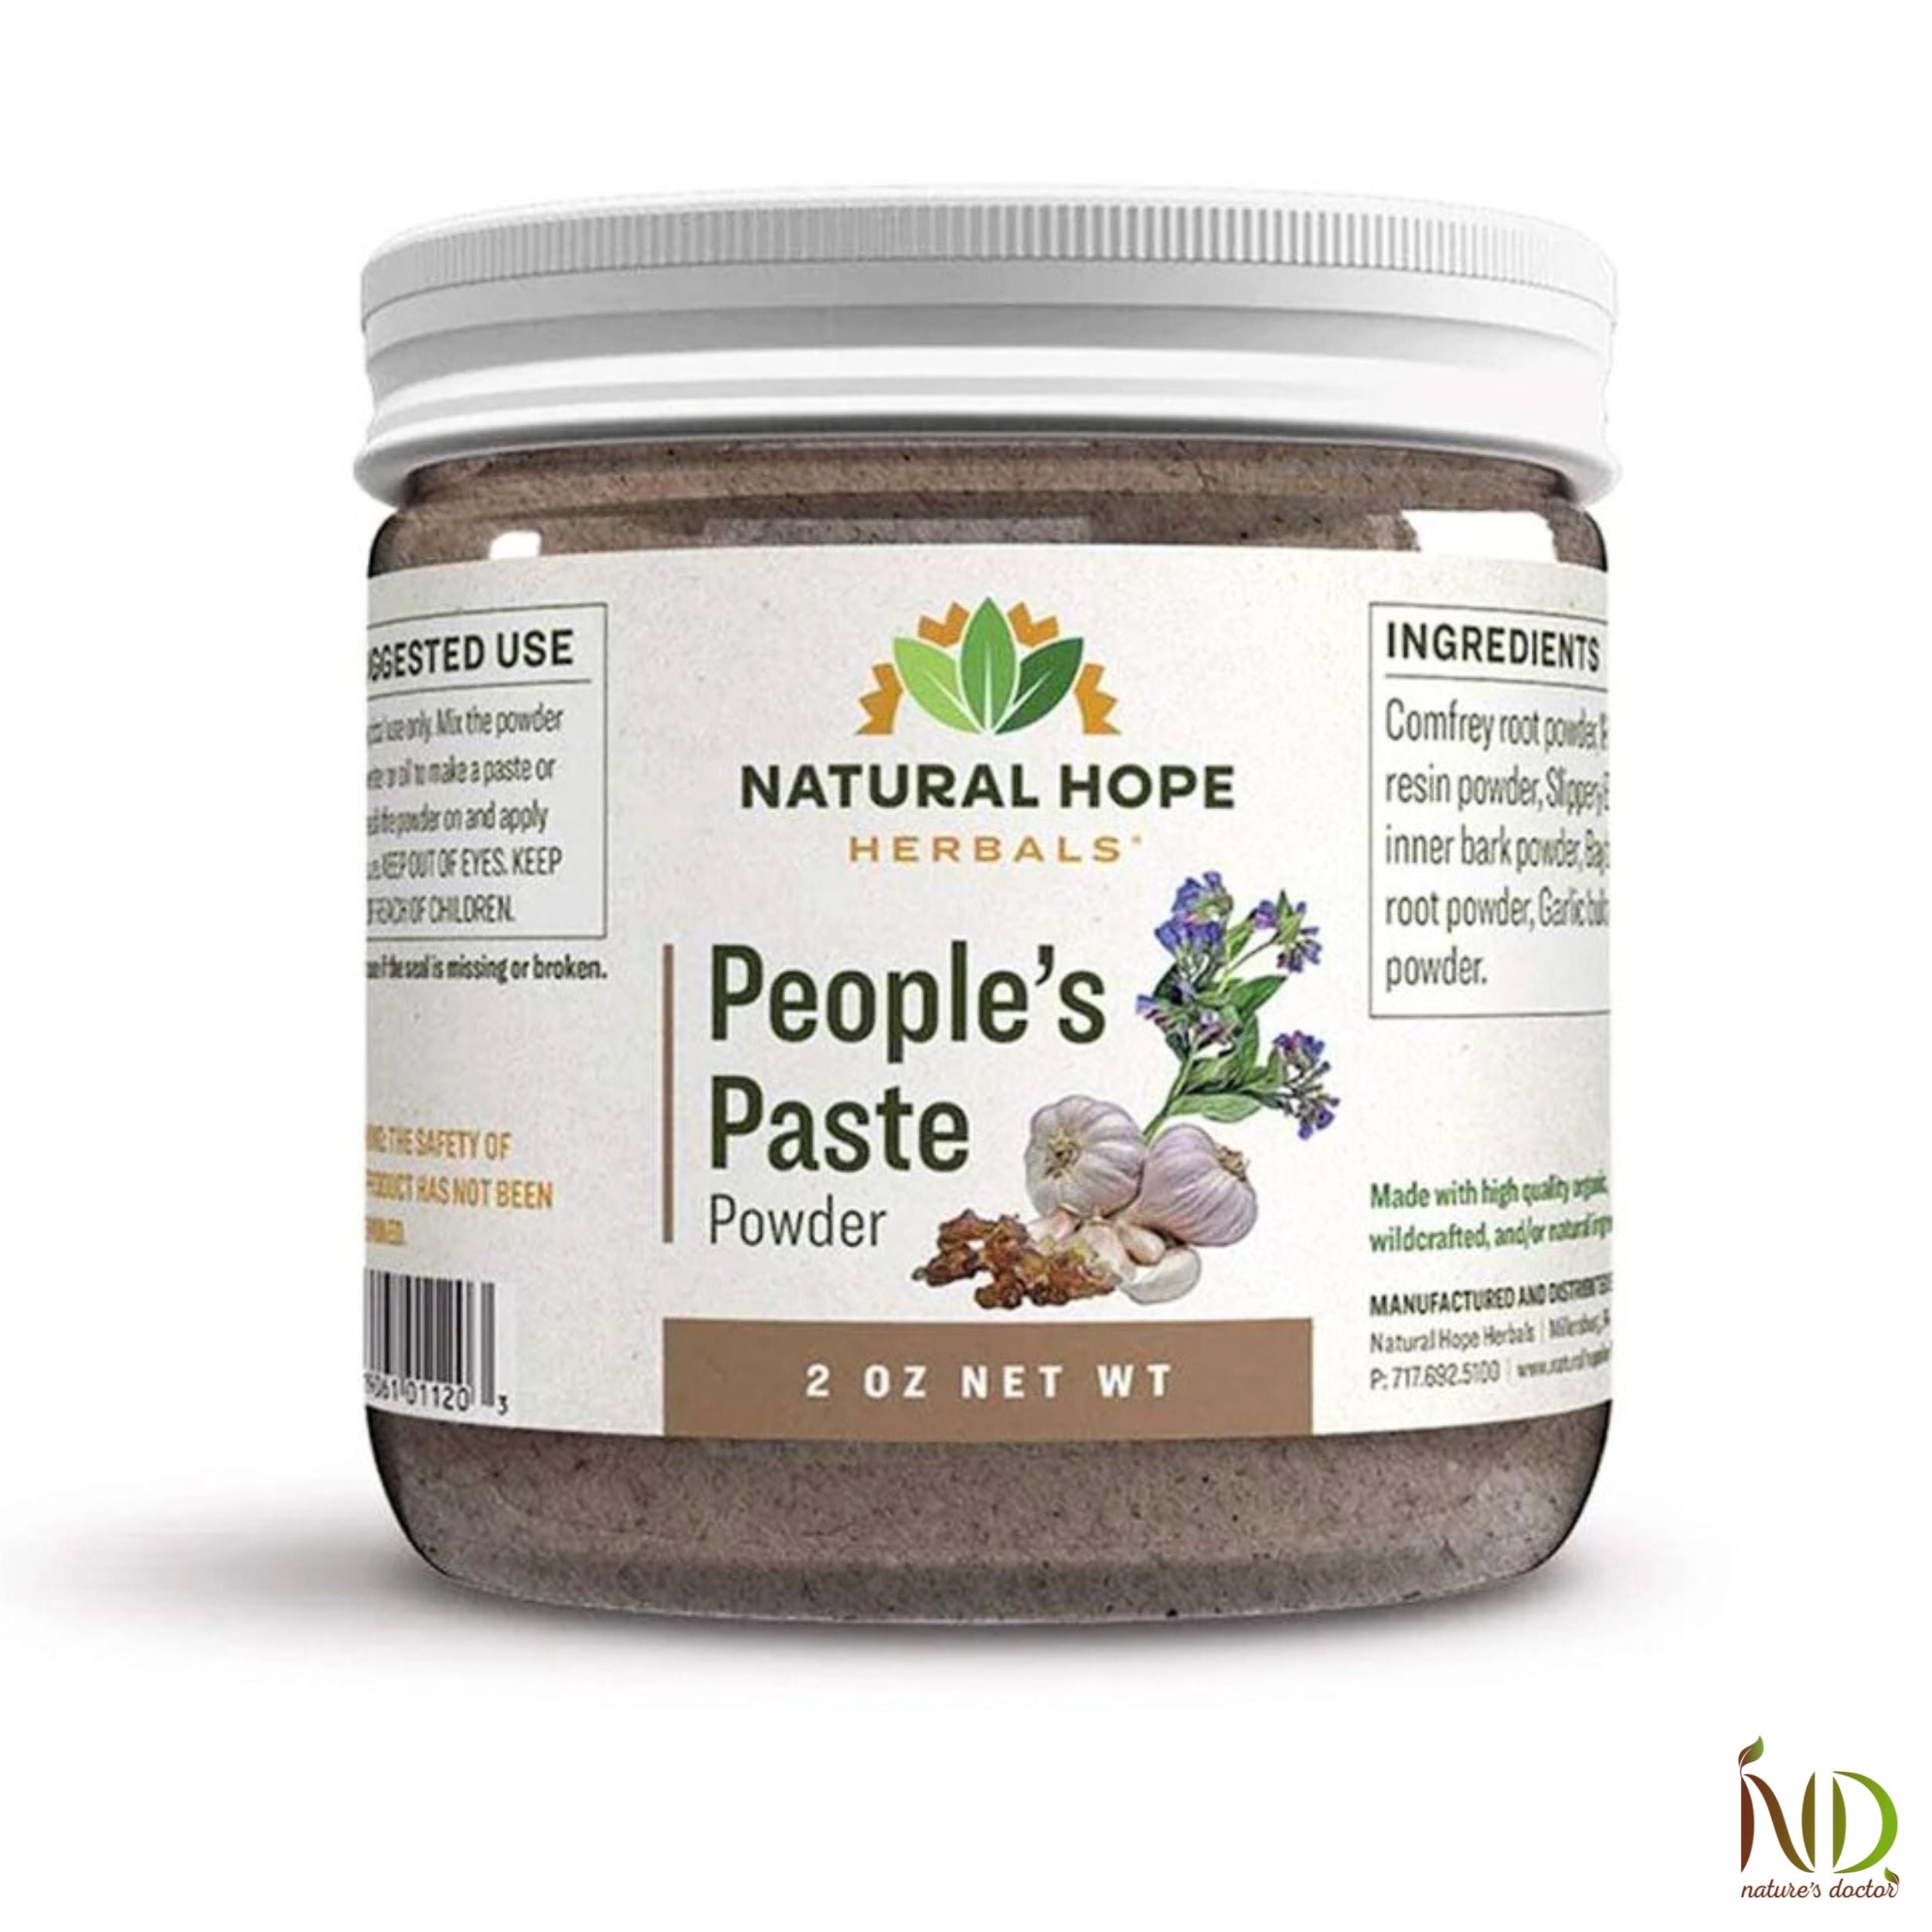 People’s Paste Powder - Natural Hope Herbals